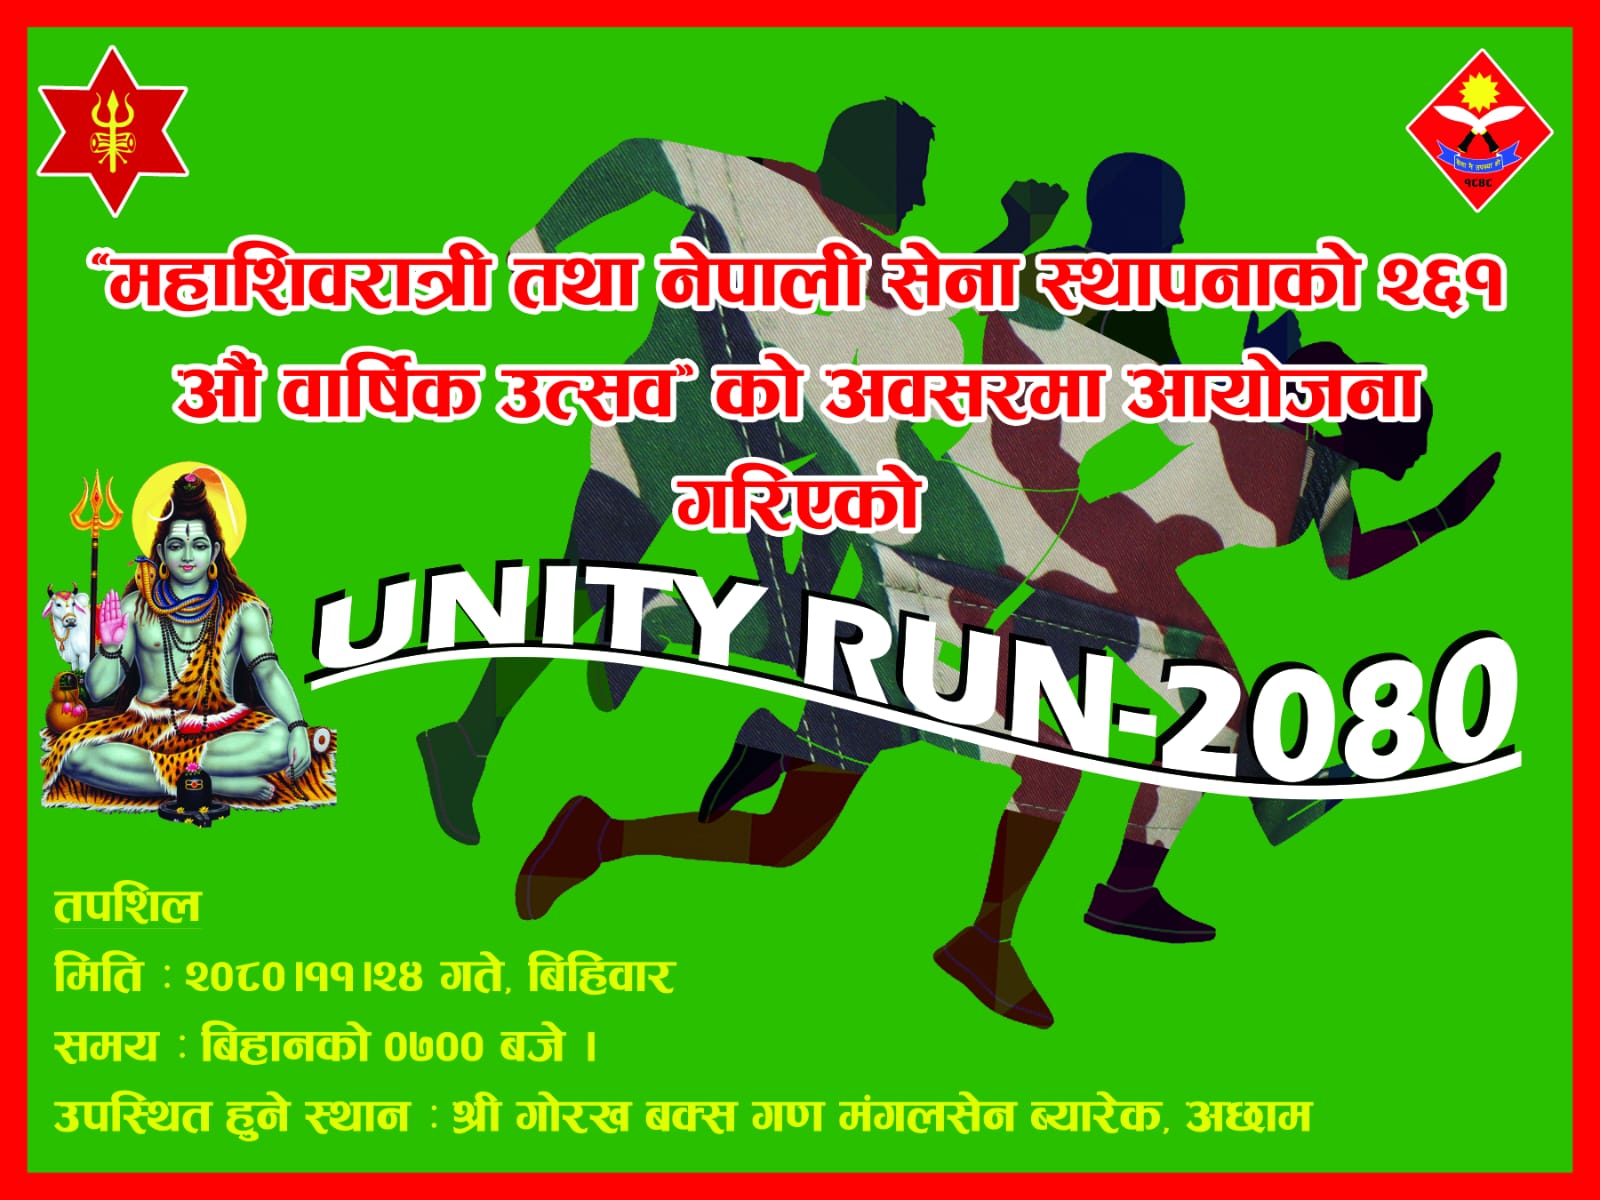 महाशिवरात्रि तथा नेपाली सेना दिवसको अवसरमा गोरख बक्स गण अछामले दौड प्रतियोगिता गर्ने